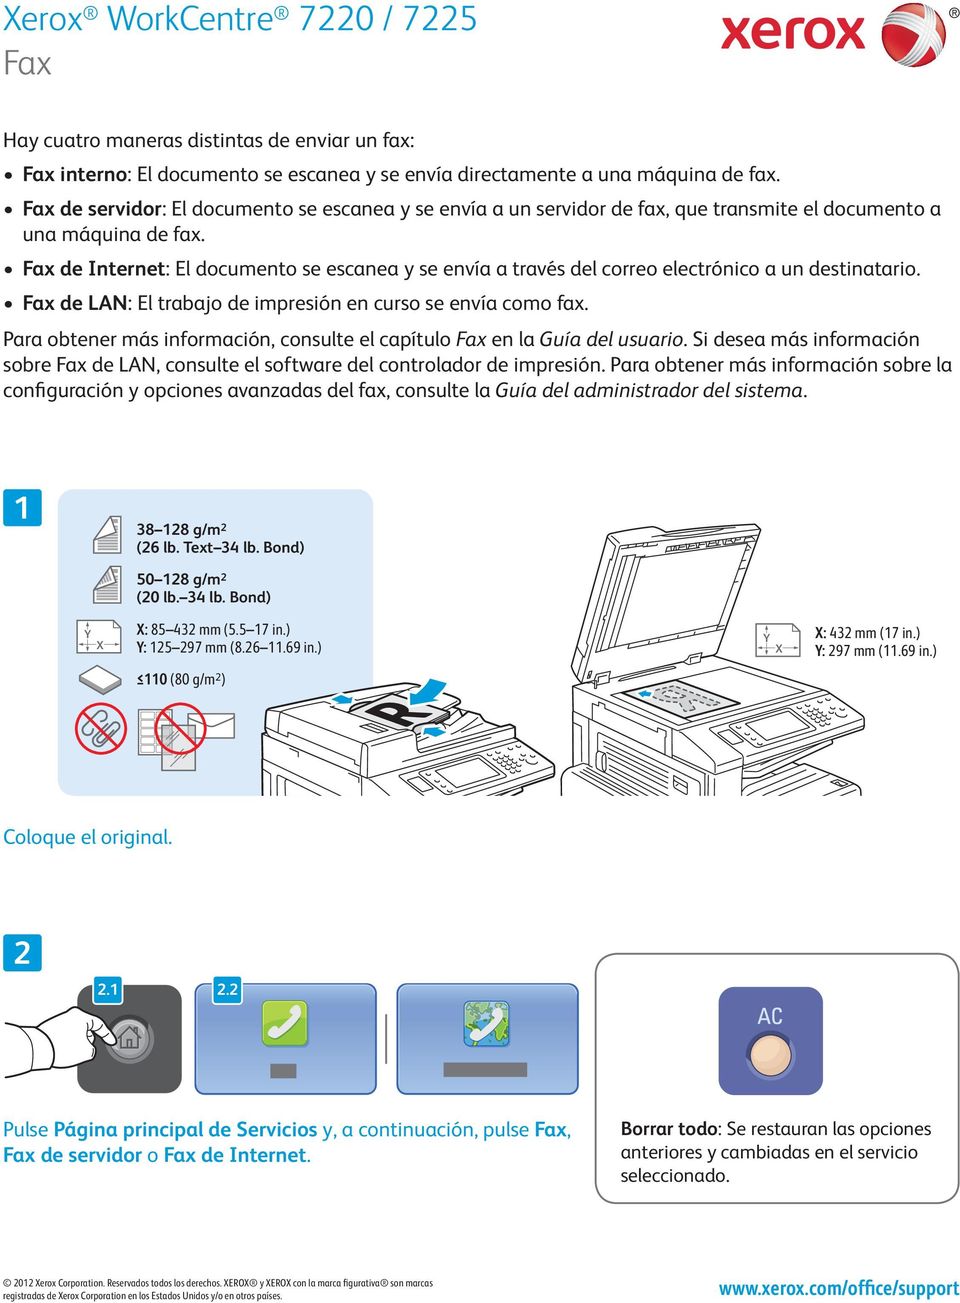 Fax de Internet: El documento se escanea y se envía a través del correo electrónico a un destinatario. Fax de LAN: El trabajo de impresión en curso se envía como fax.